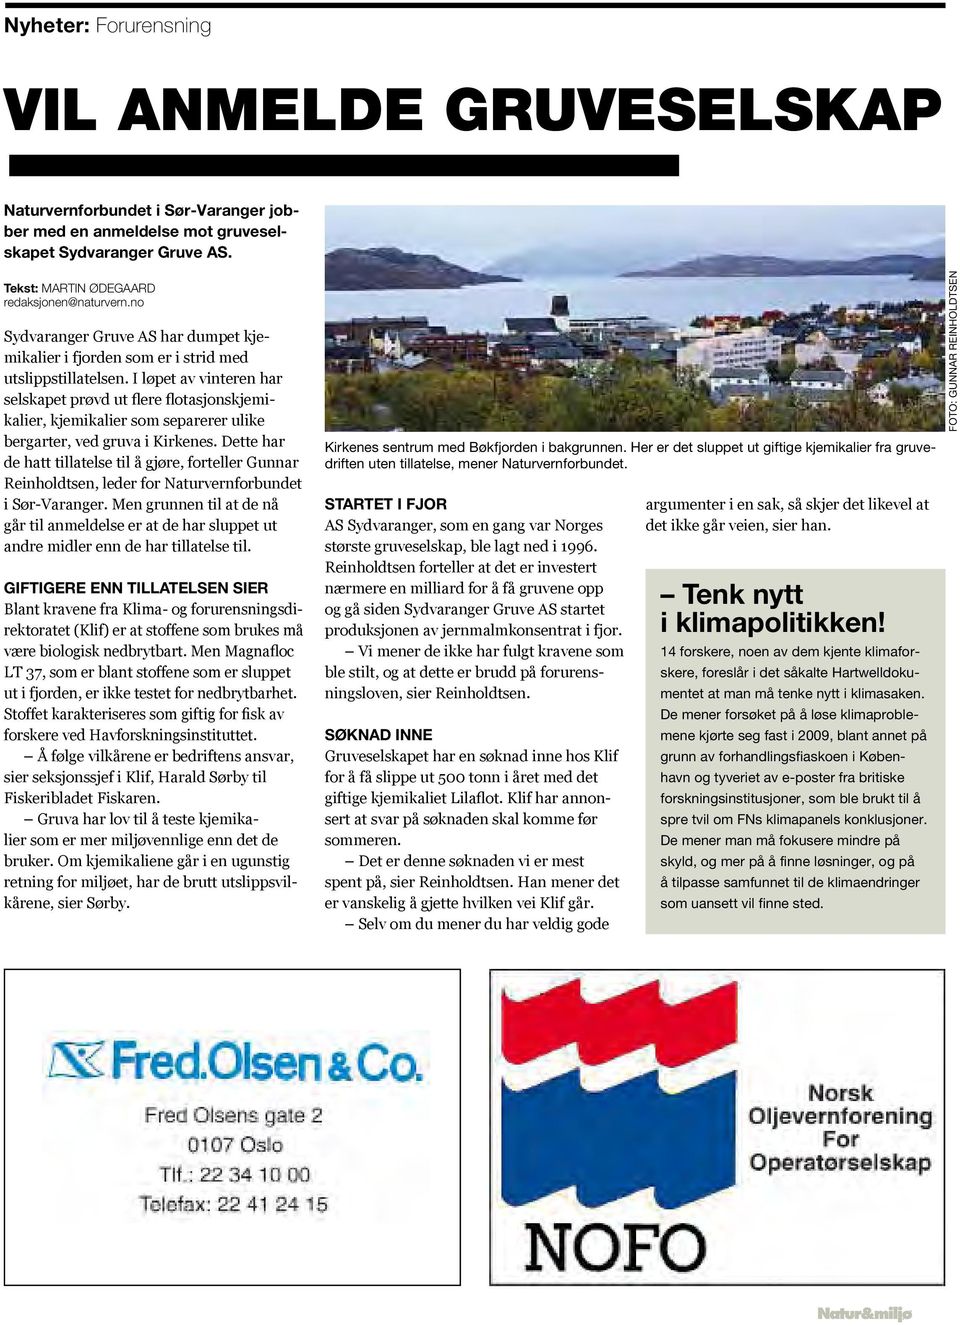 I løpet av vinteren har selskapet prøvd ut flere flotasjonskjemikalier, kjemikalier som separerer ulike bergarter, ved gruva i Kirkenes.